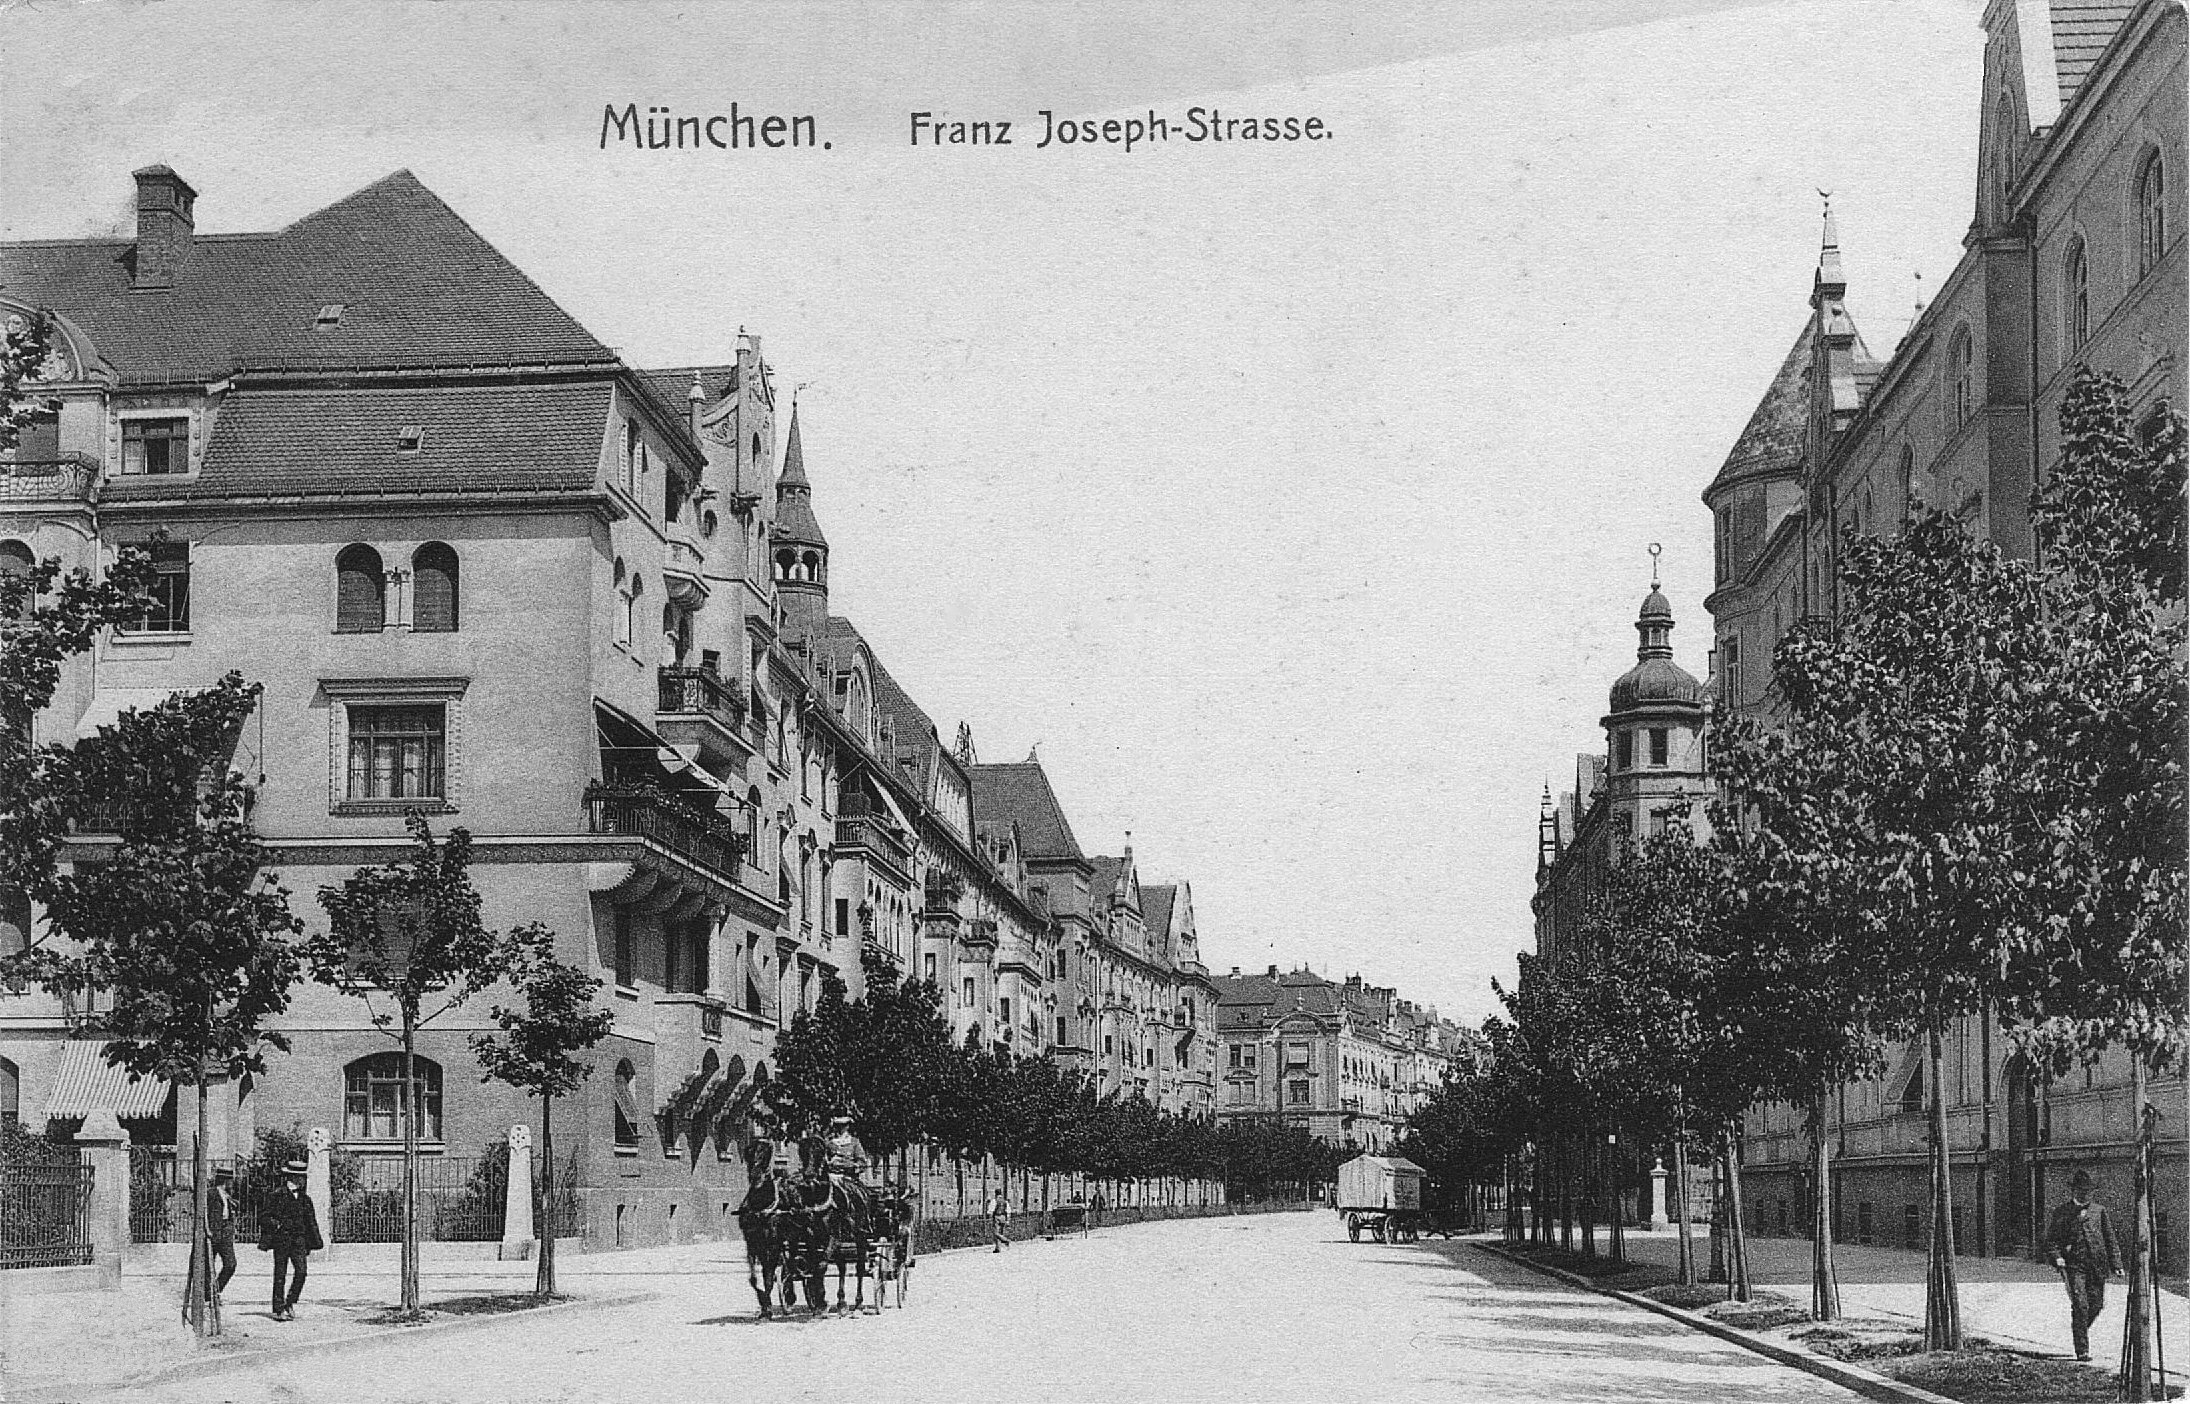 München Franz-Joseph-Strasse 13b, der meistbesuchte Ort des Widerstandskreises Weis-se Rose, Postkarte gelaufen 1910, Privatbesitz